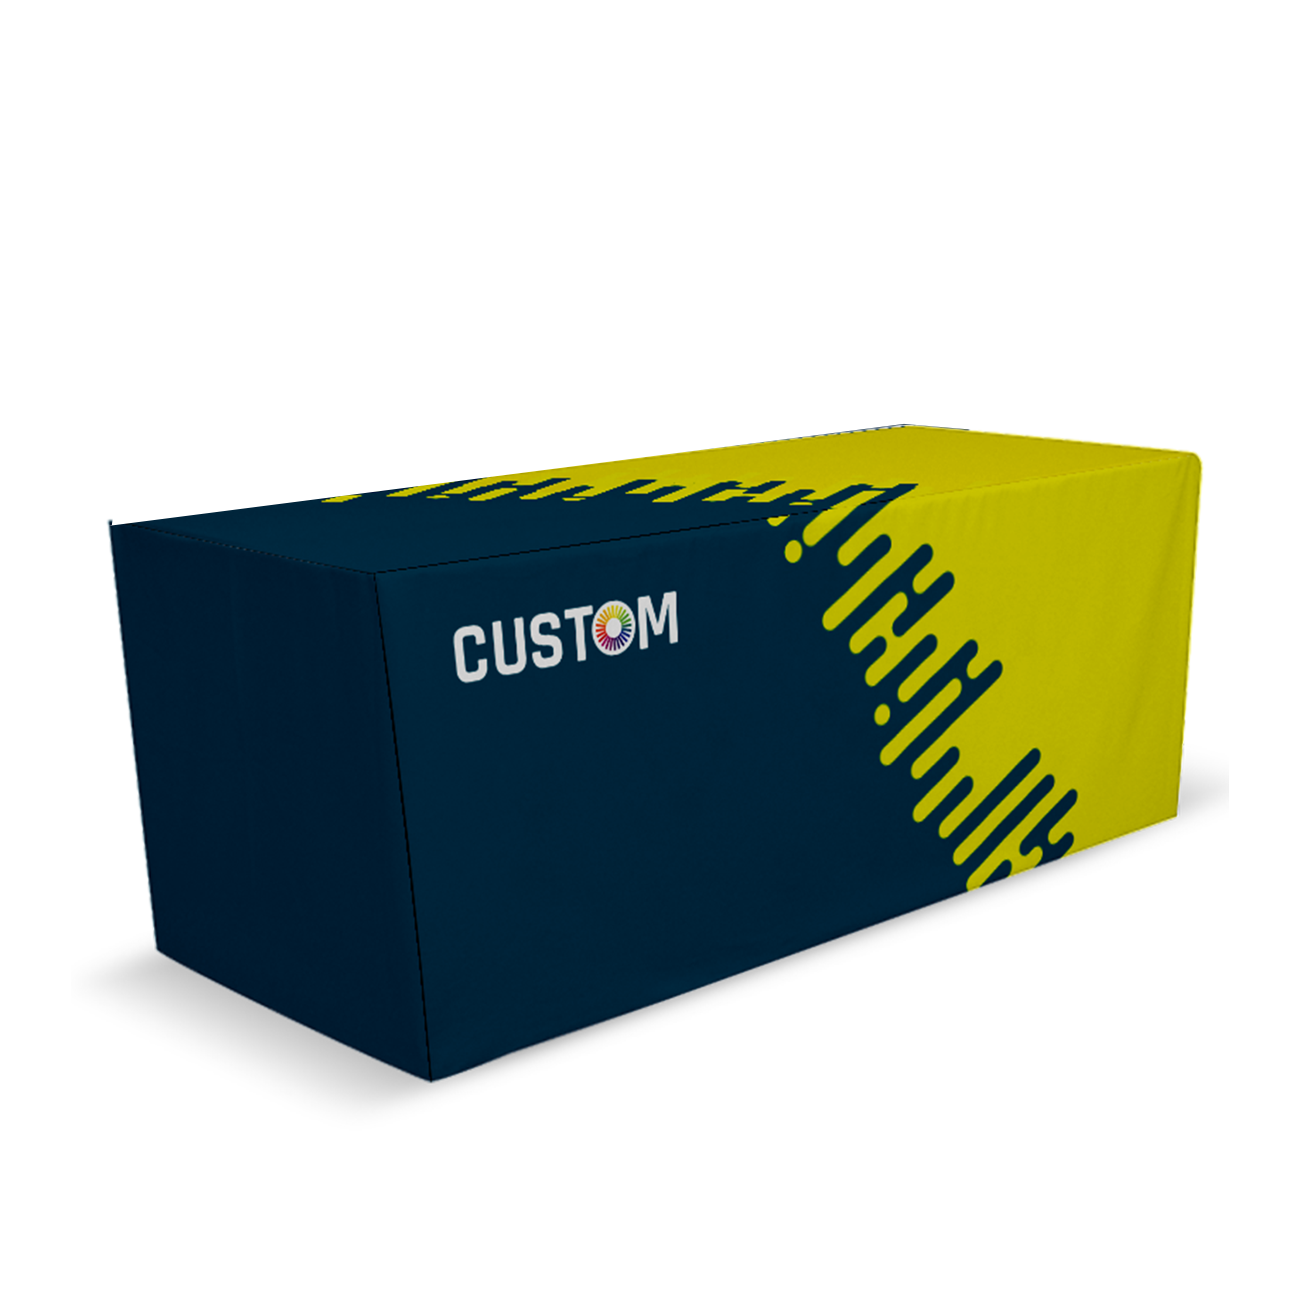 Custom Box Fit Table Cover BestFlag